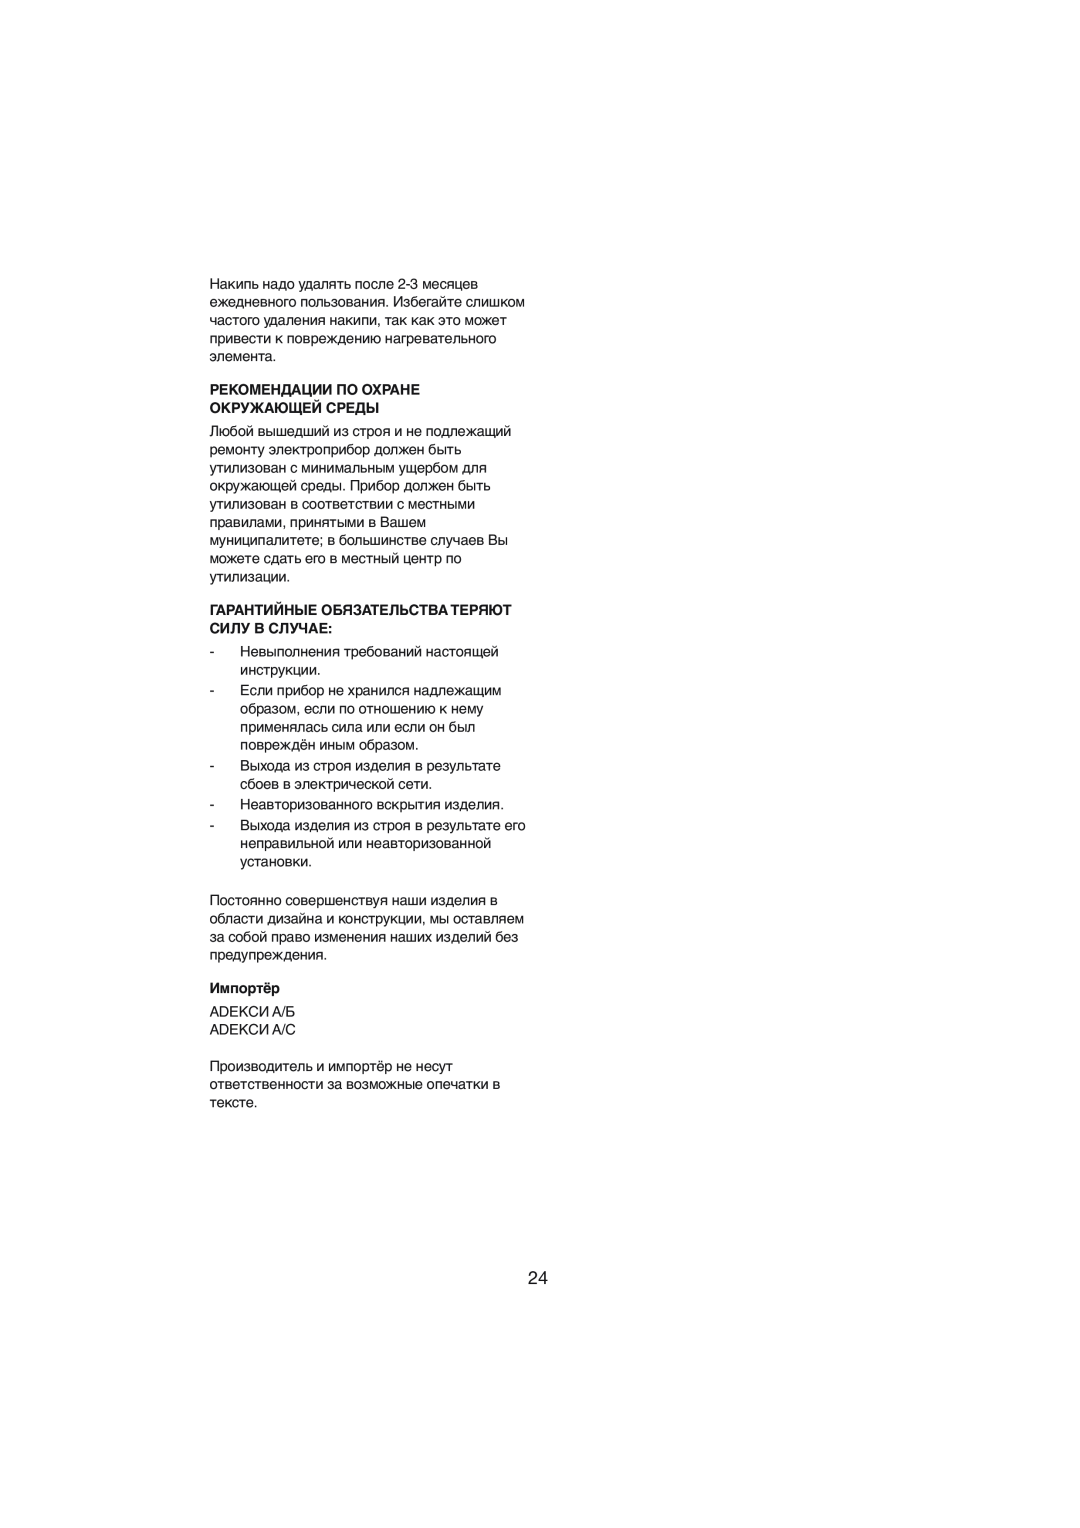 Melissa 245-015 manual Рекомендации По Охране Окружающей Среды, Гарантийные Обязательства Теряют Силу В Случае, Импортёр 